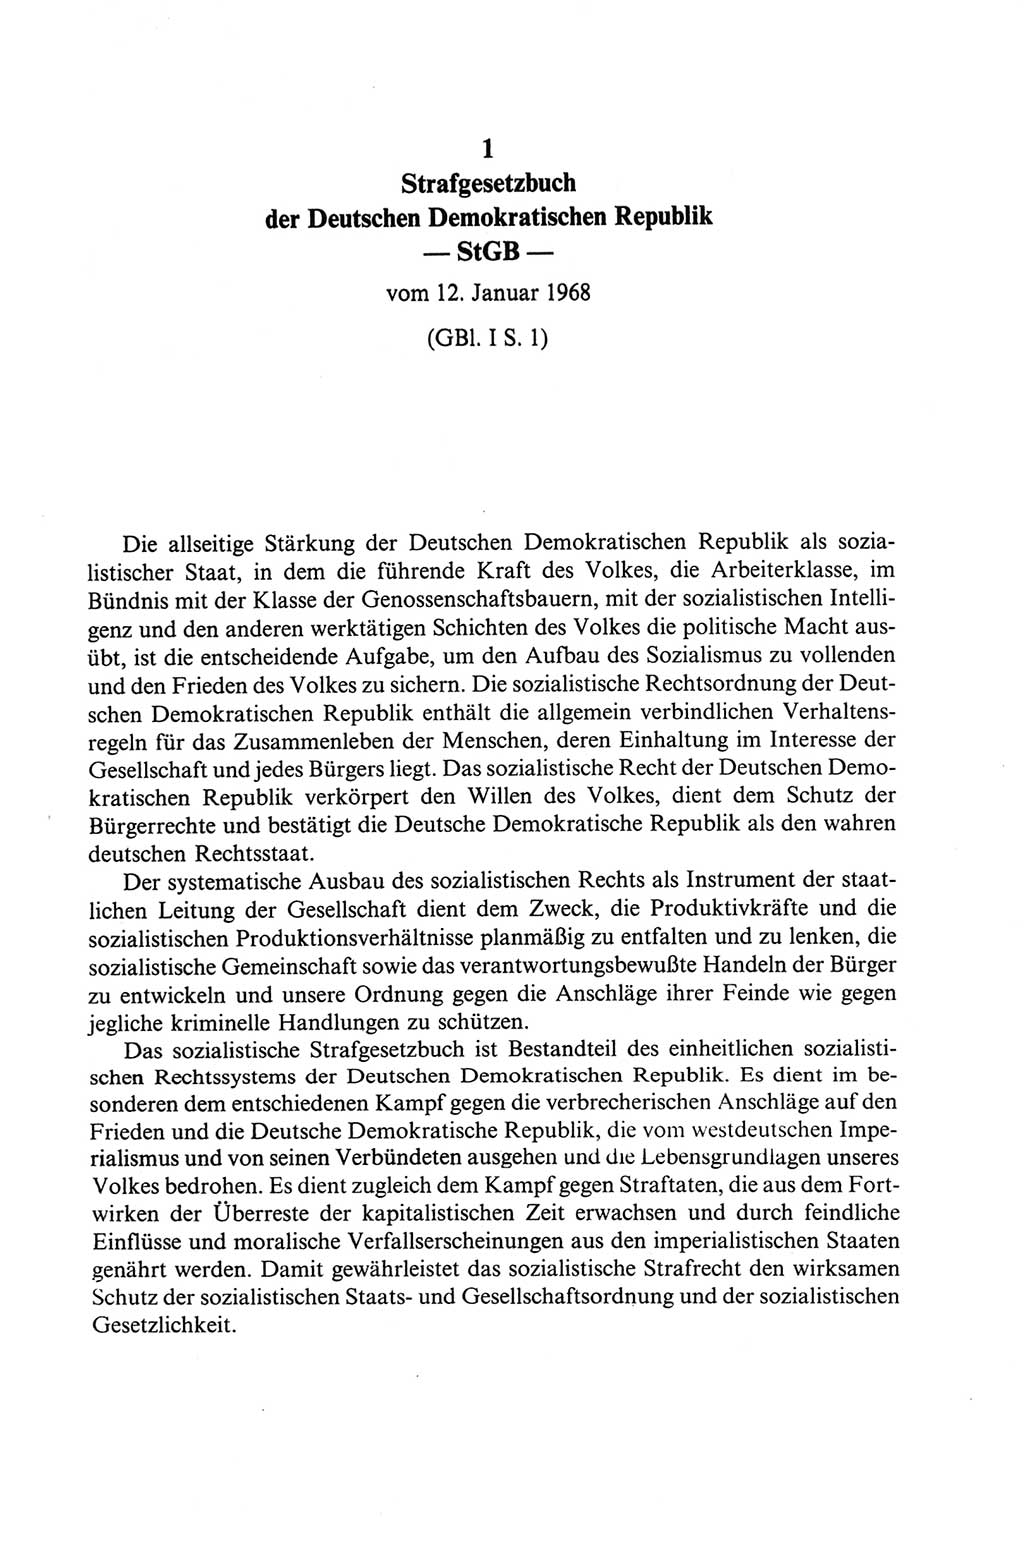 Strafgesetzbuch (StGB) der Deutschen Demokratischen Republik (DDR) und angrenzende Gesetze und Bestimmungen 1968, Seite 25 (StGB Ges. Best. DDR 1968, S. 25)